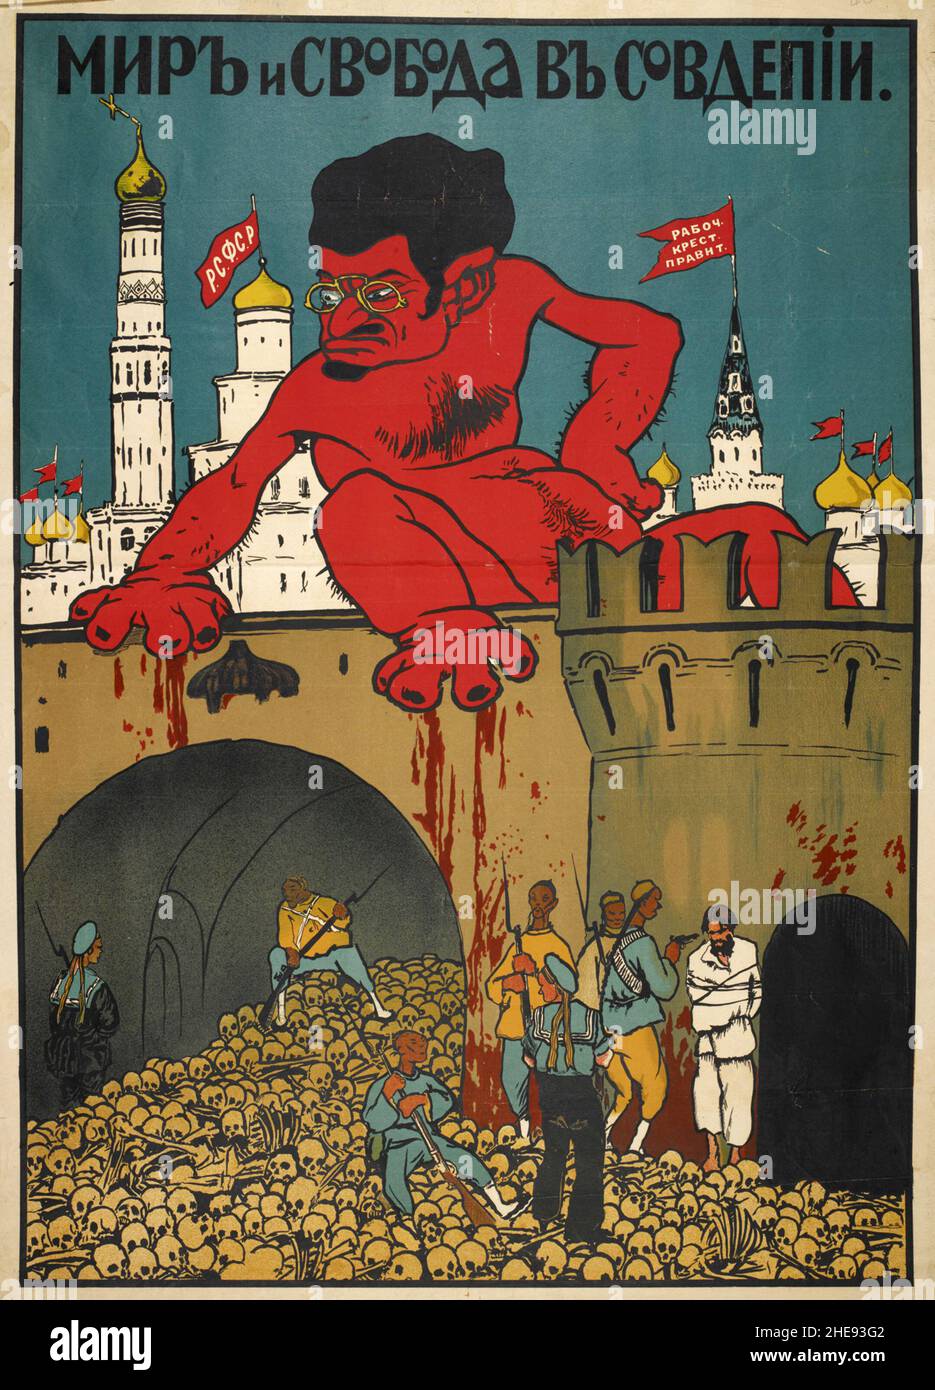 Un manifesto di propaganda anti bolscevica del 1920 che mostra un oversize Leon Trotsky come il diavolo che gocciola sangue su un mucchio di teschi con la didascalia "Pace e libertà nella Russia sovietica" Foto Stock